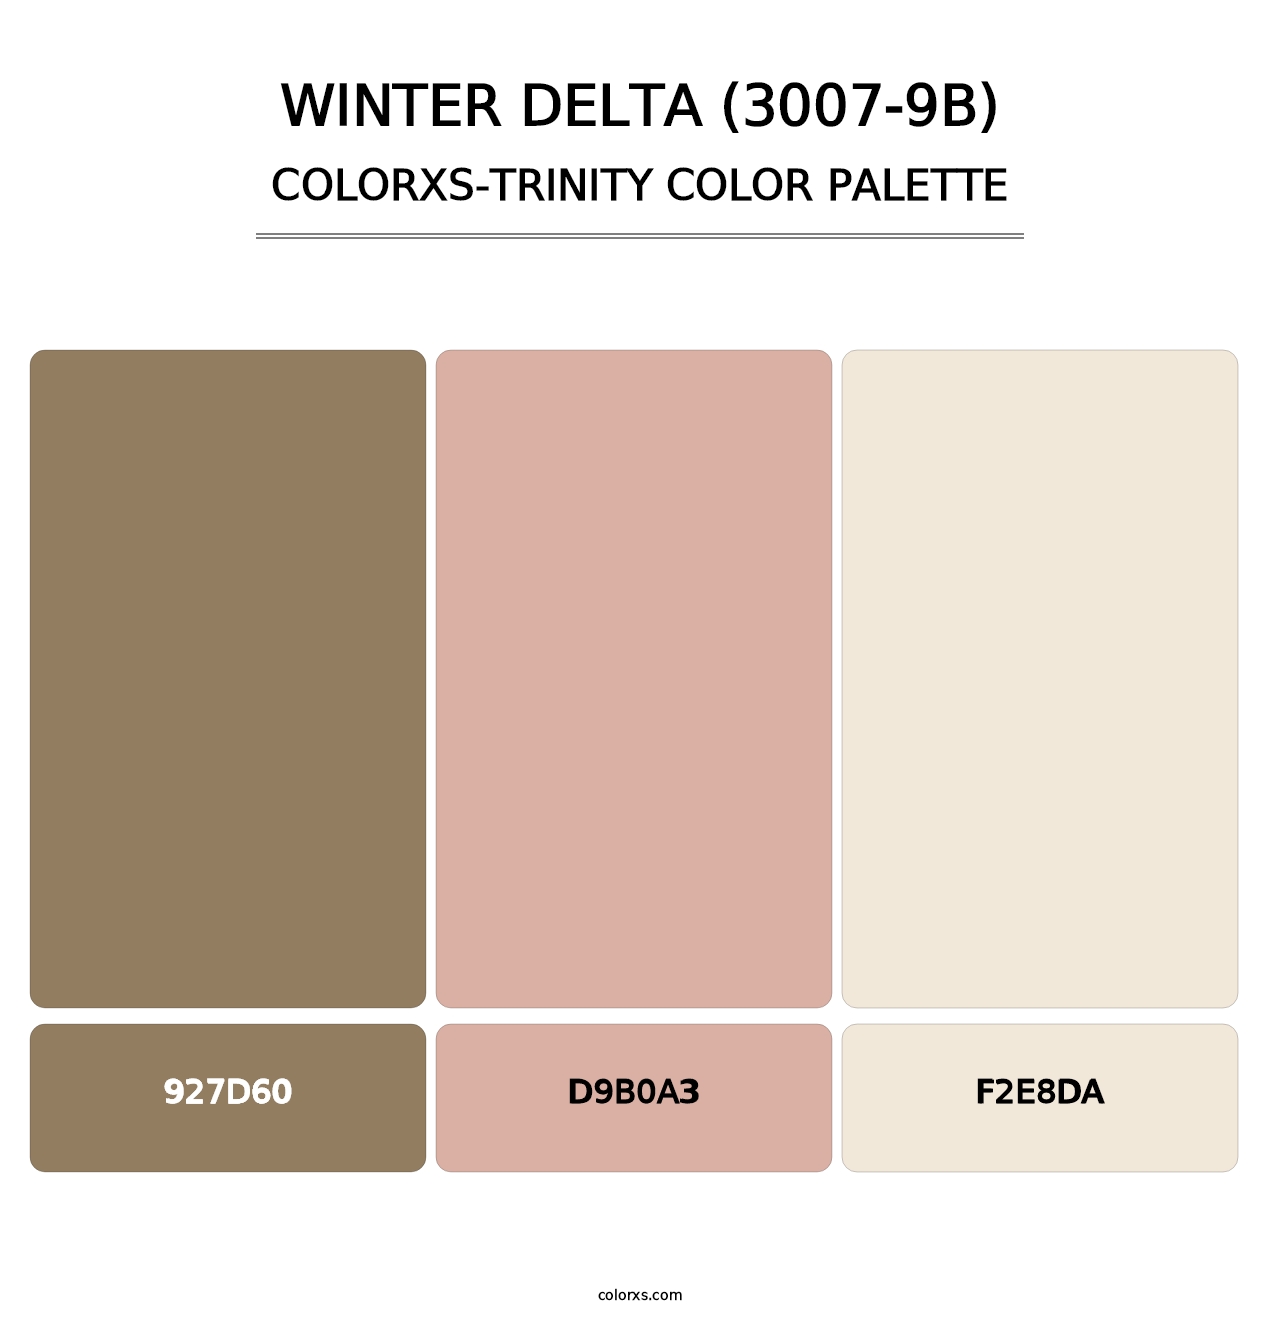 Winter Delta (3007-9B) - Colorxs Trinity Palette